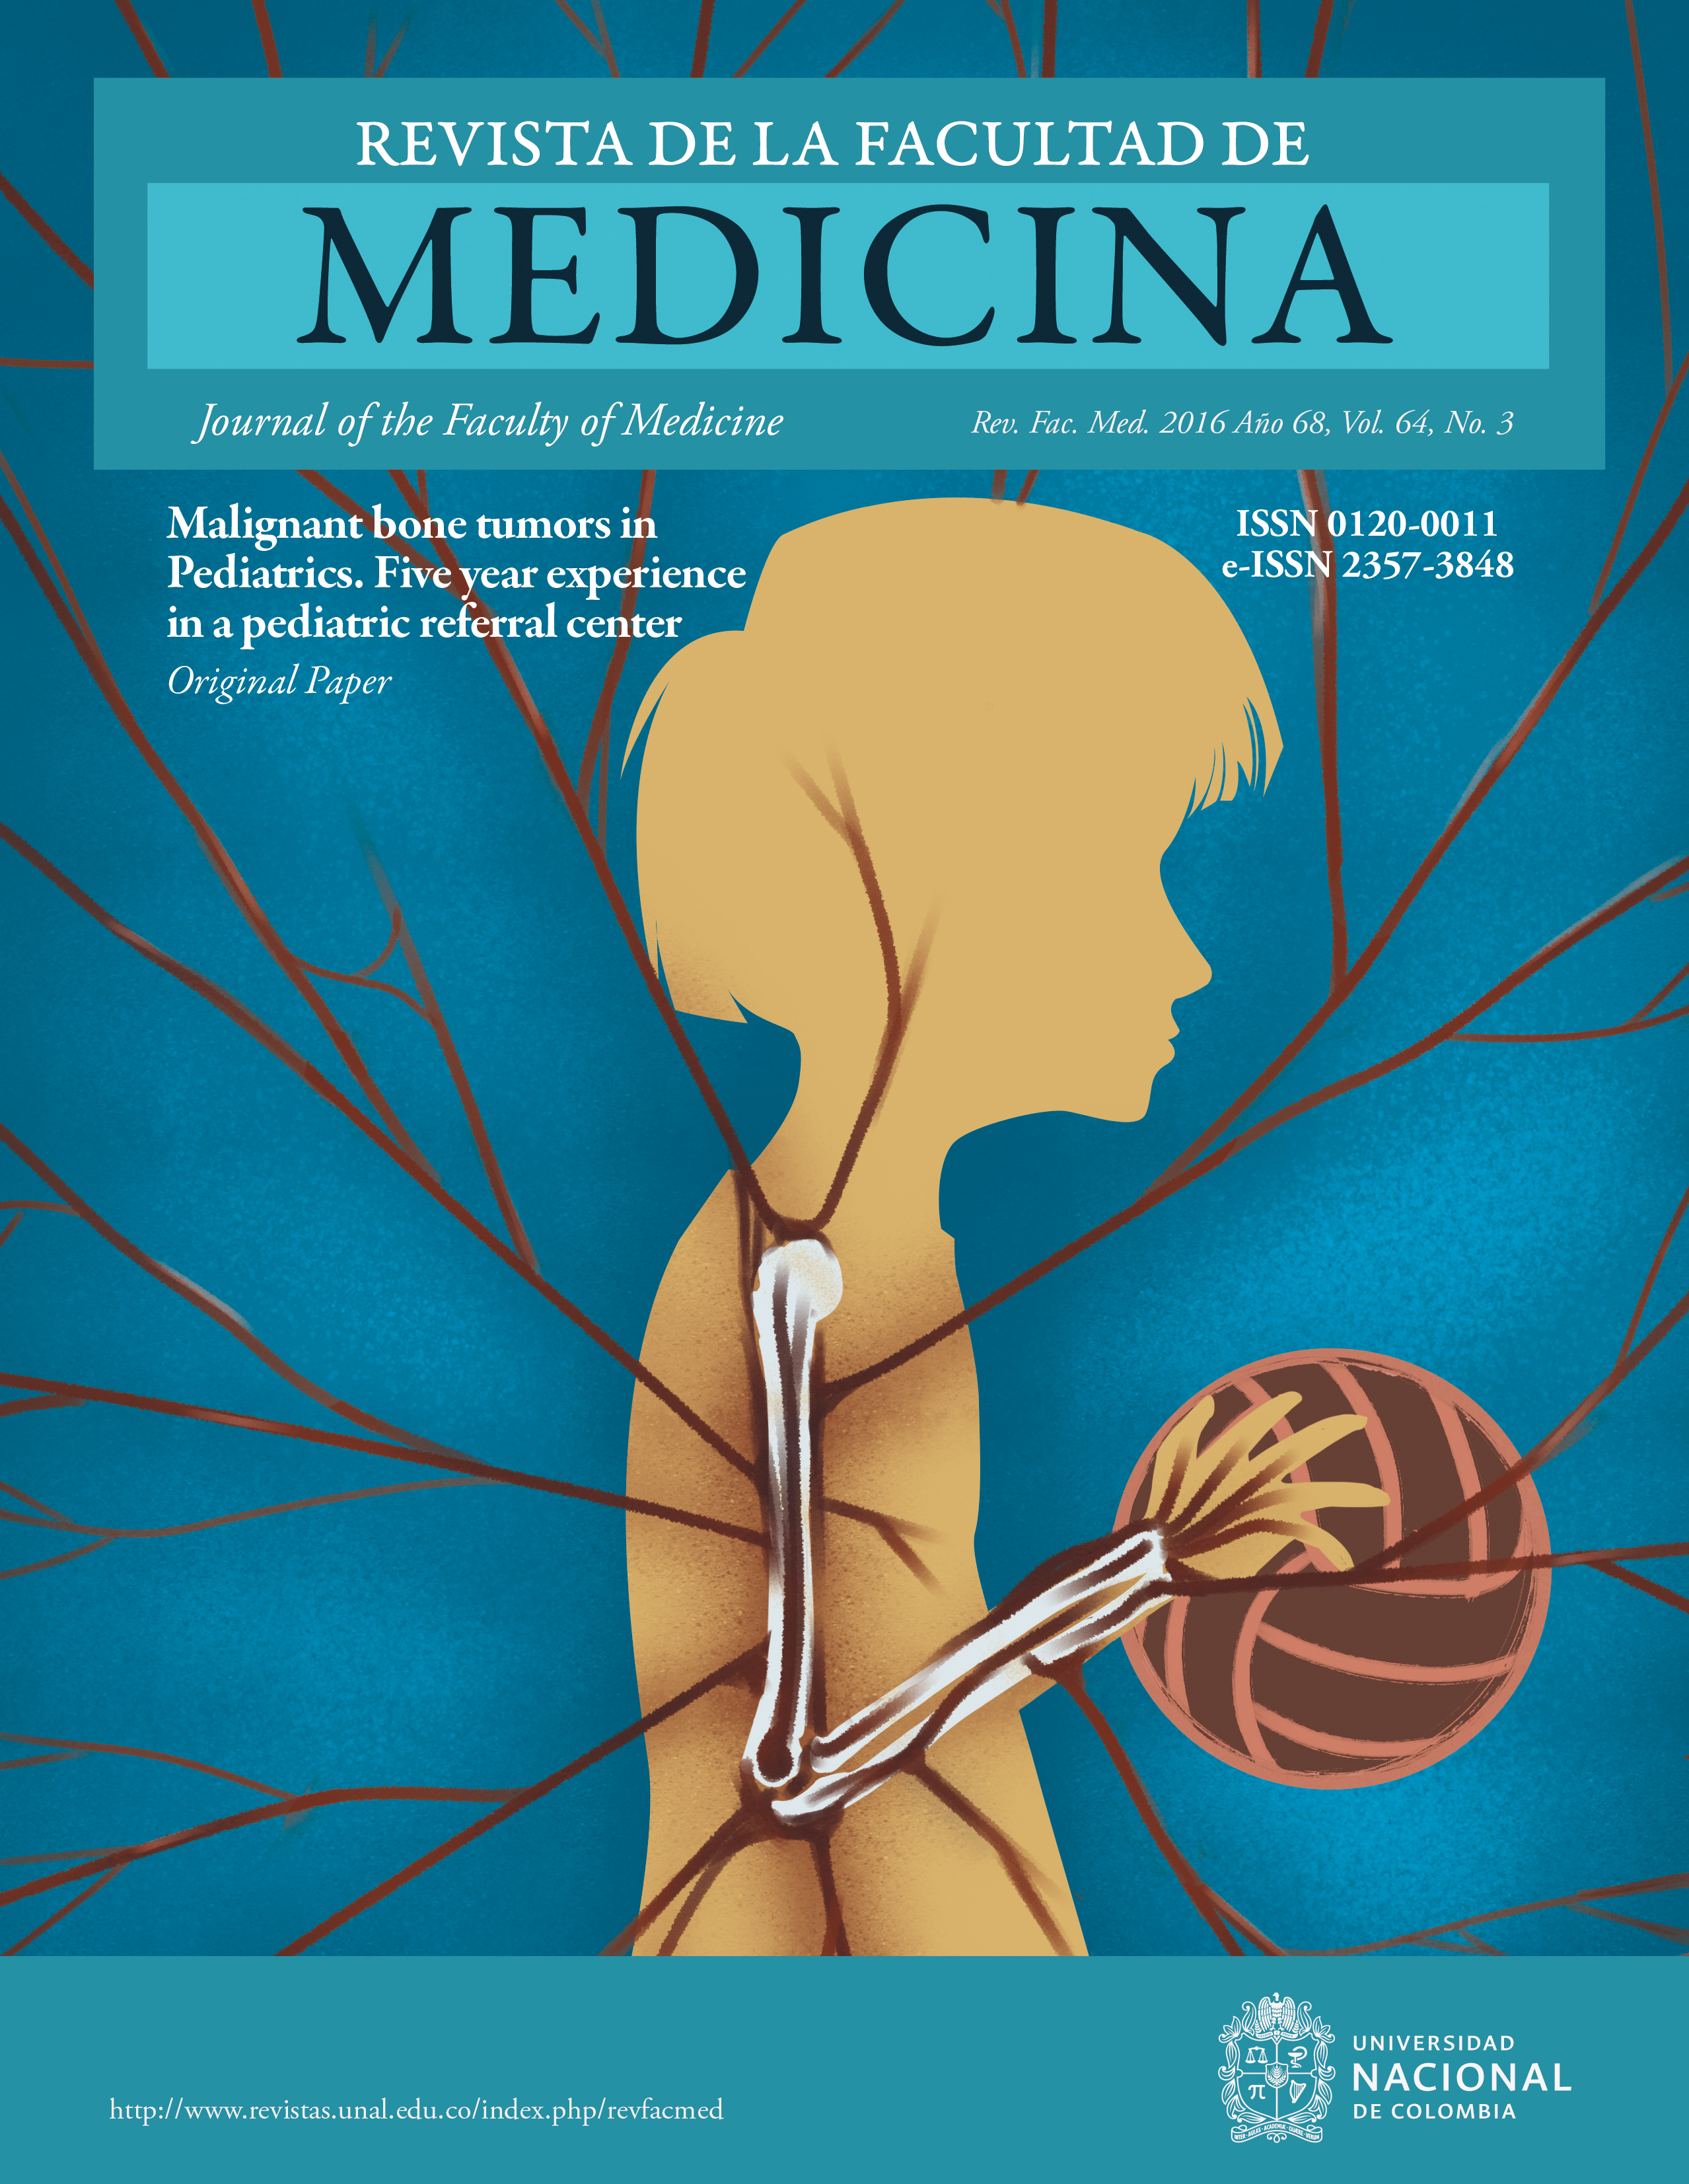 Volumen 64, Número 3 Revista de la Facultad de Medicina